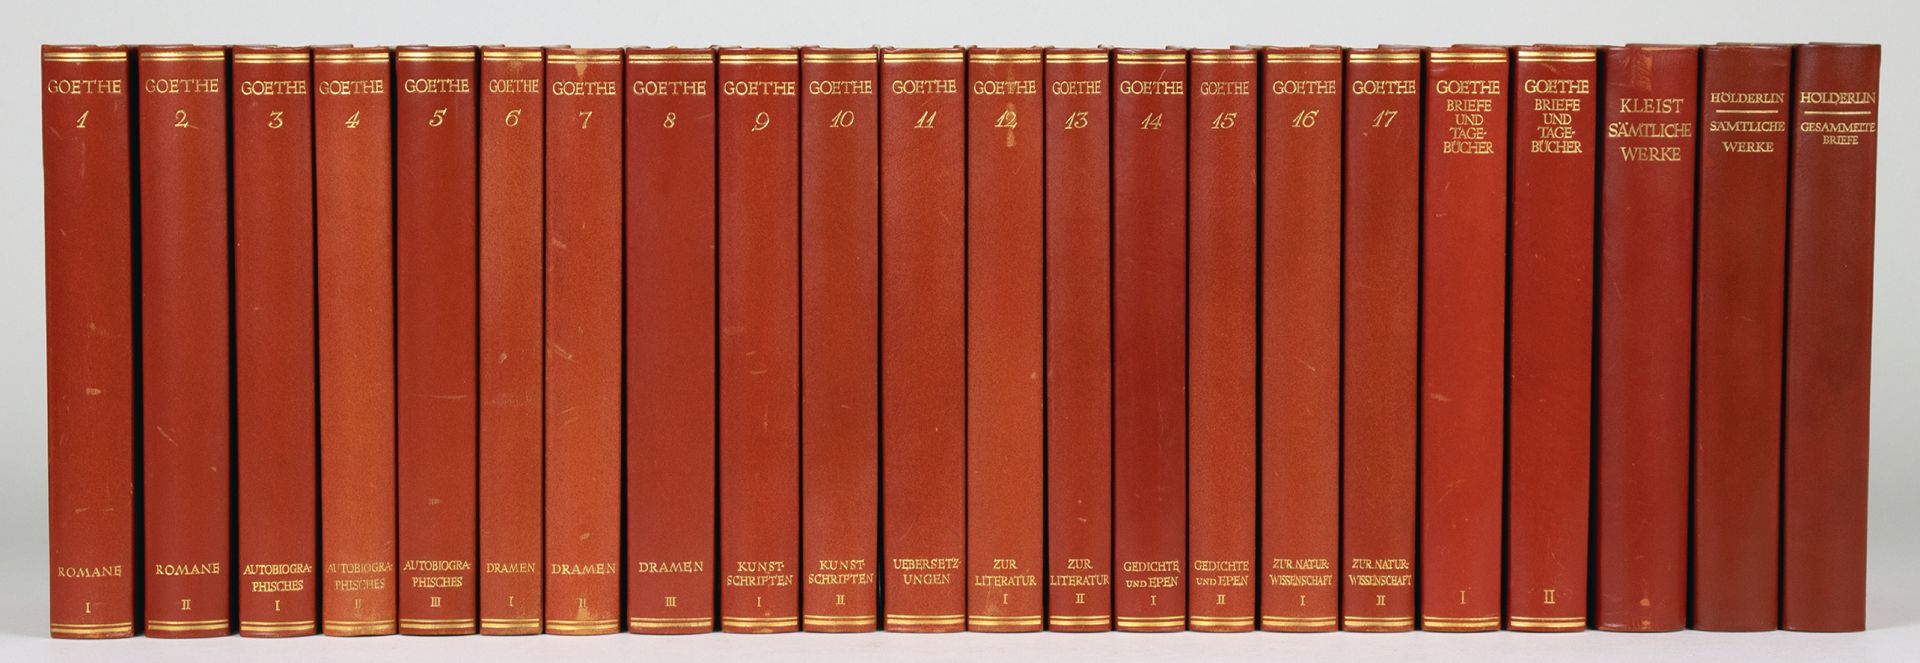 Insel-Verlag - Goethe. Sämtliche Werke. 1934